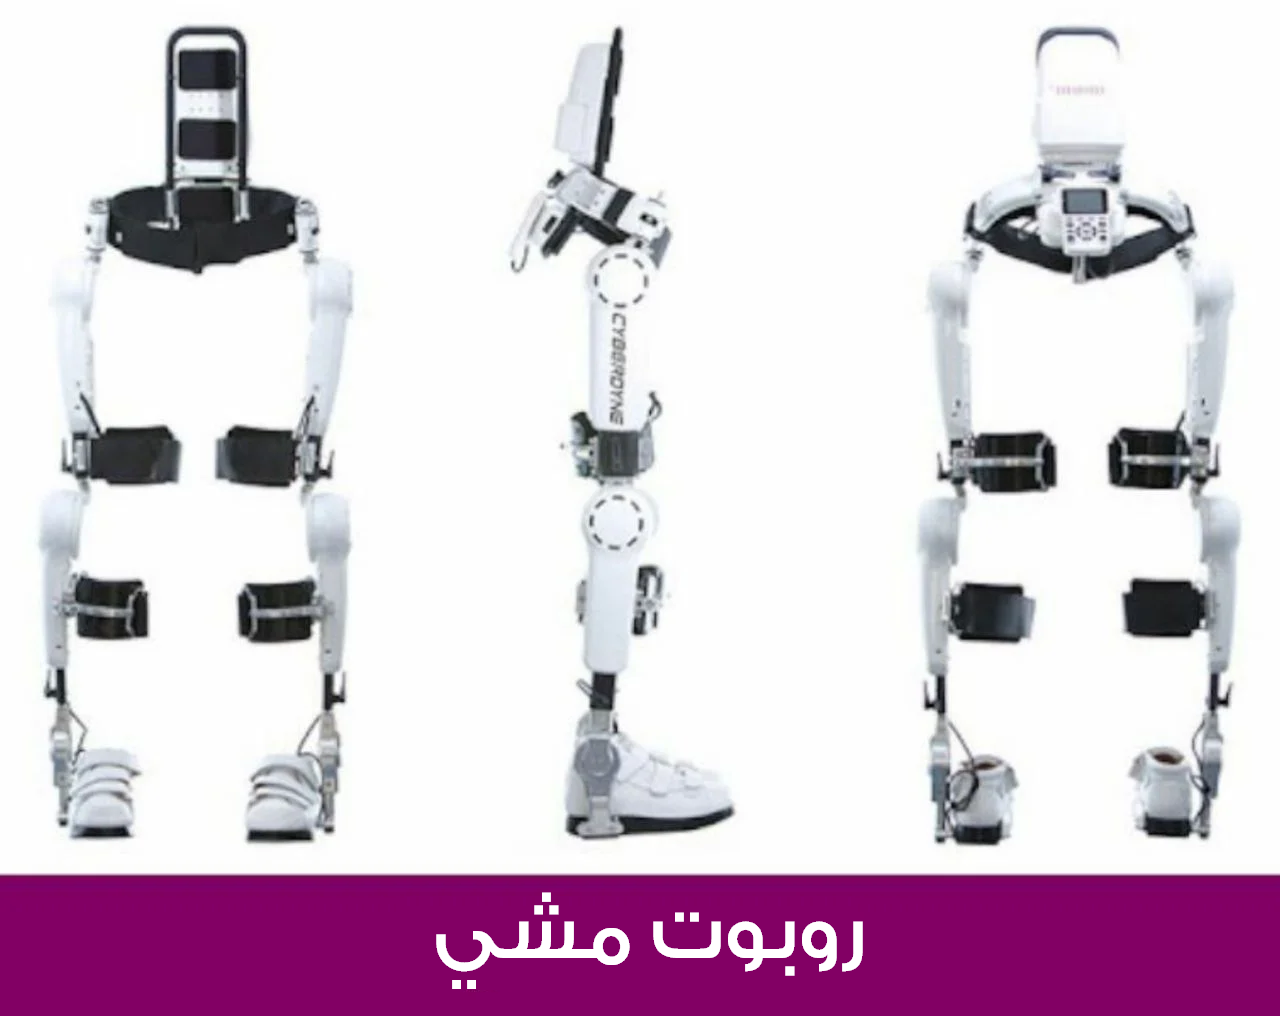 روبوت متطور للمشي يمكن ضبطه بحسب احتياجات كل مريض في عملية إعادة التأهيل